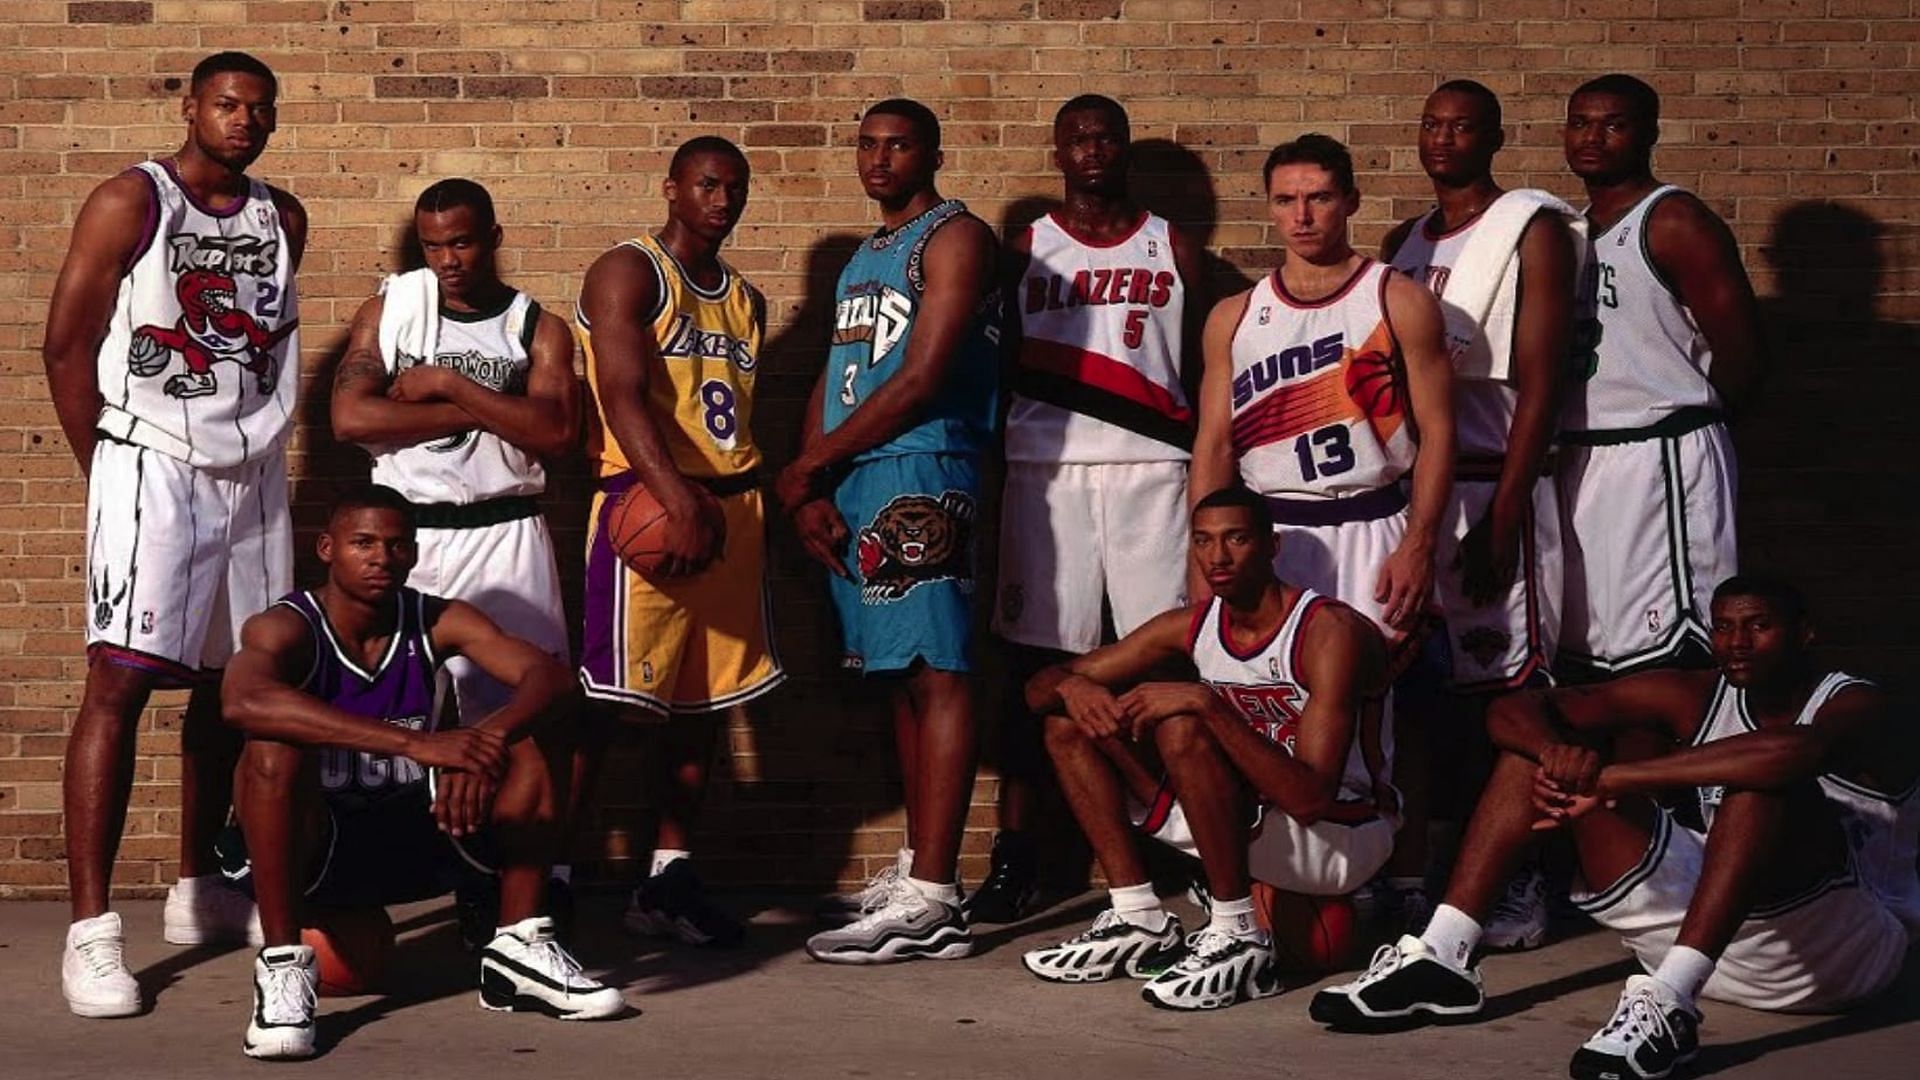 The 1996 NBA Draft class in their team uniforms